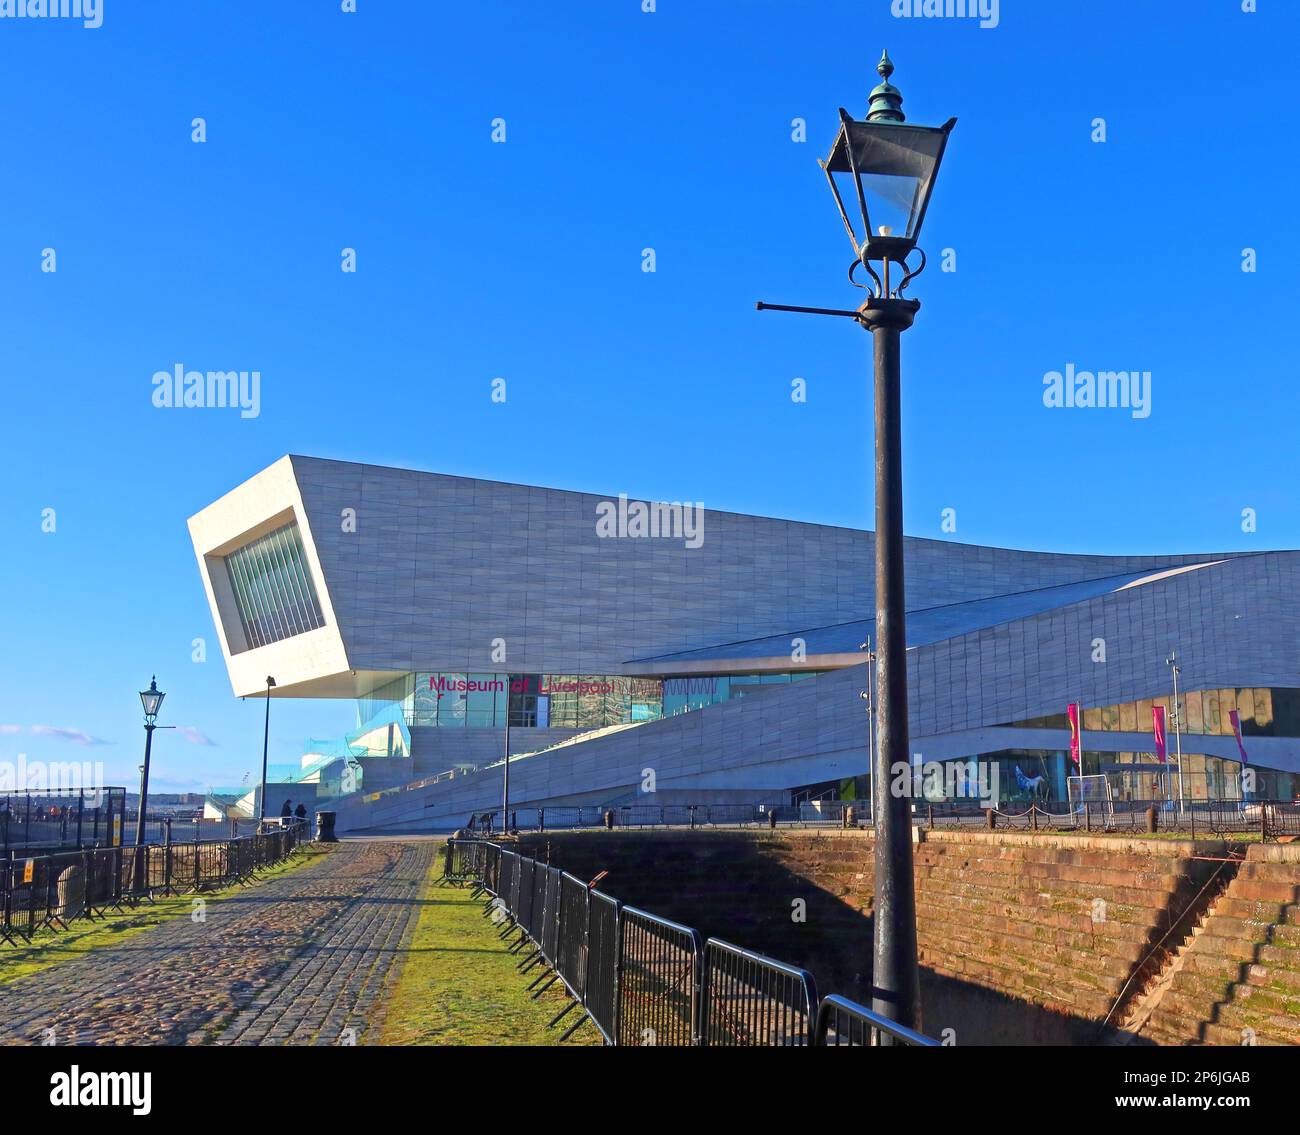 Museum of Liverpool Life, du quai sec du Musée maritime, avec la rue victorienne gaslamp, Merseyside, Angleterre, Royaume-Uni, L3 4AD Banque D'Images